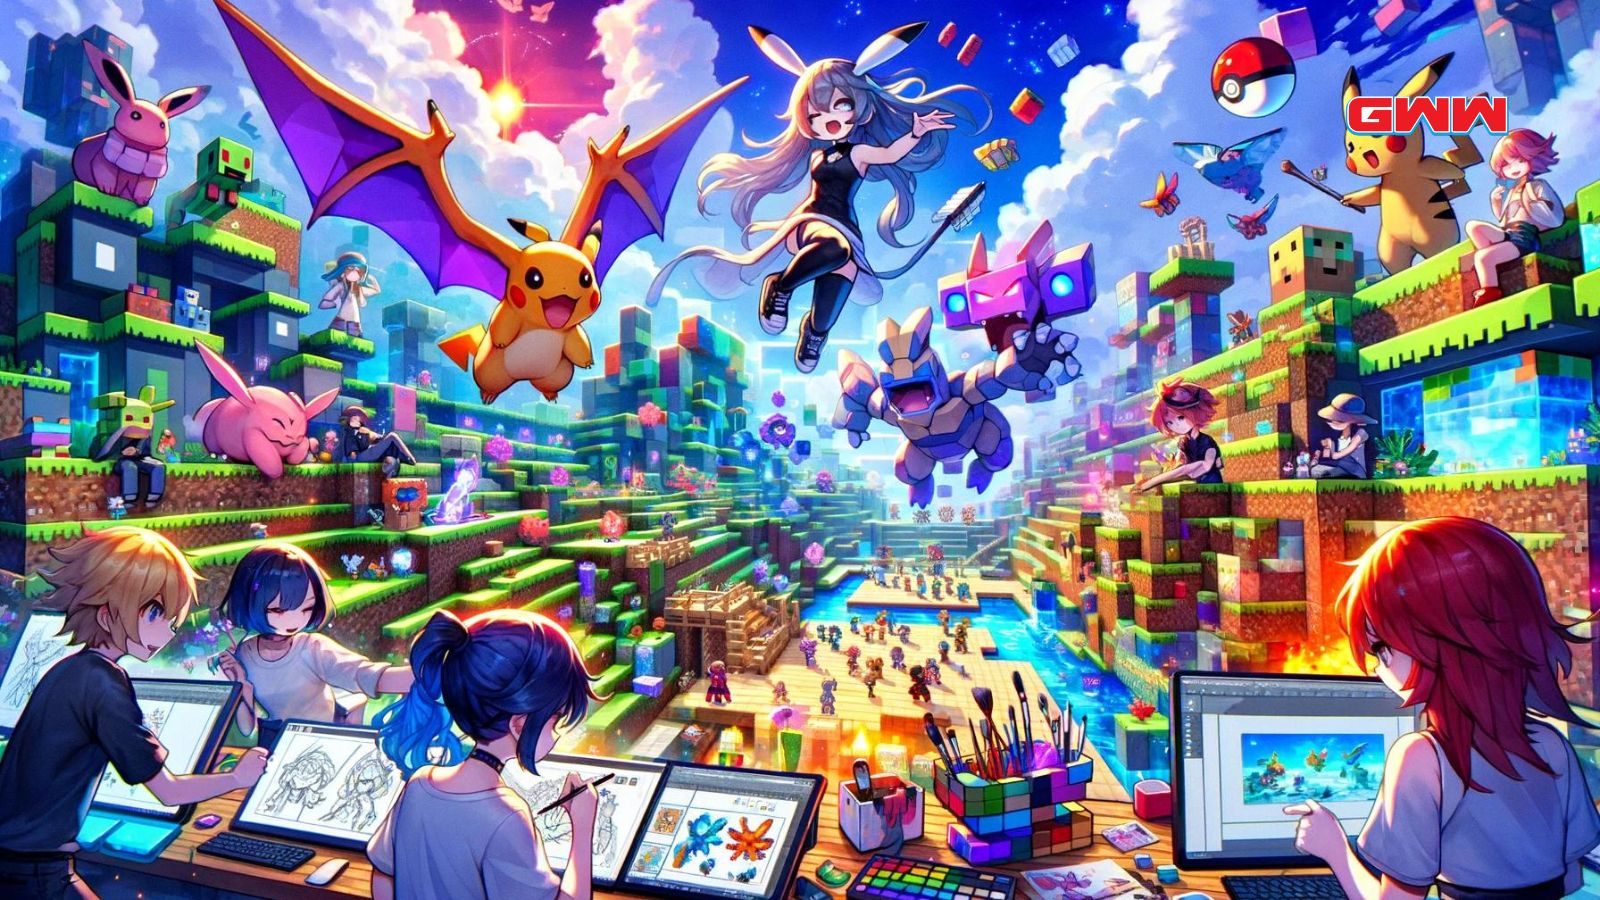 Una escena vibrante que muestra el proceso de creación de Pokémon al estilo anime en un mundo virtual.